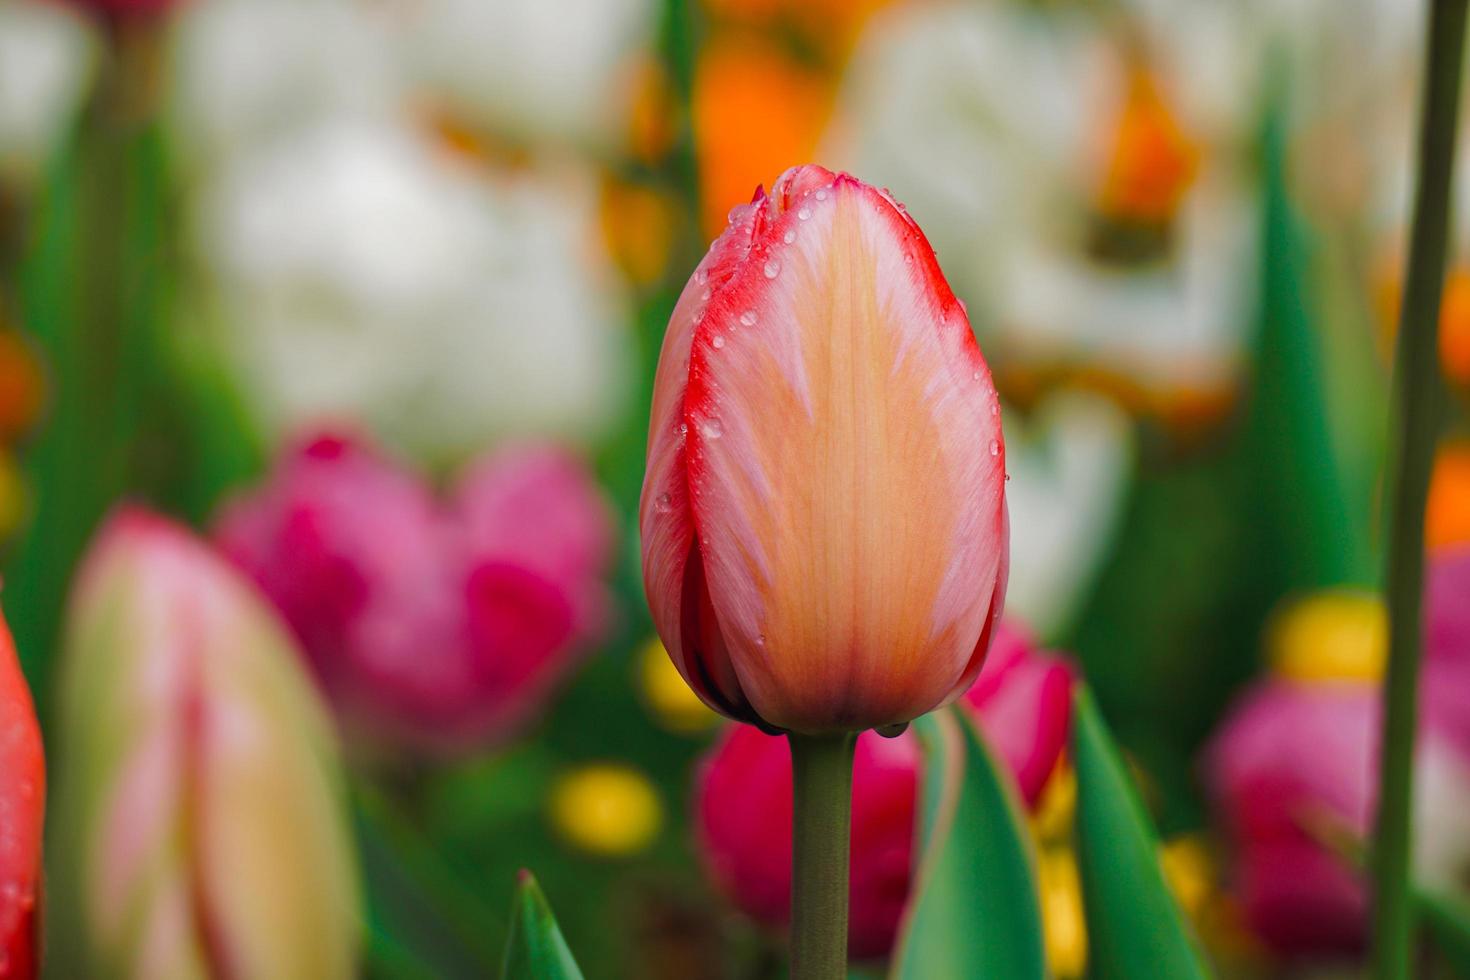 Tulipanes rosados y rojos en el jardín en primavera. foto